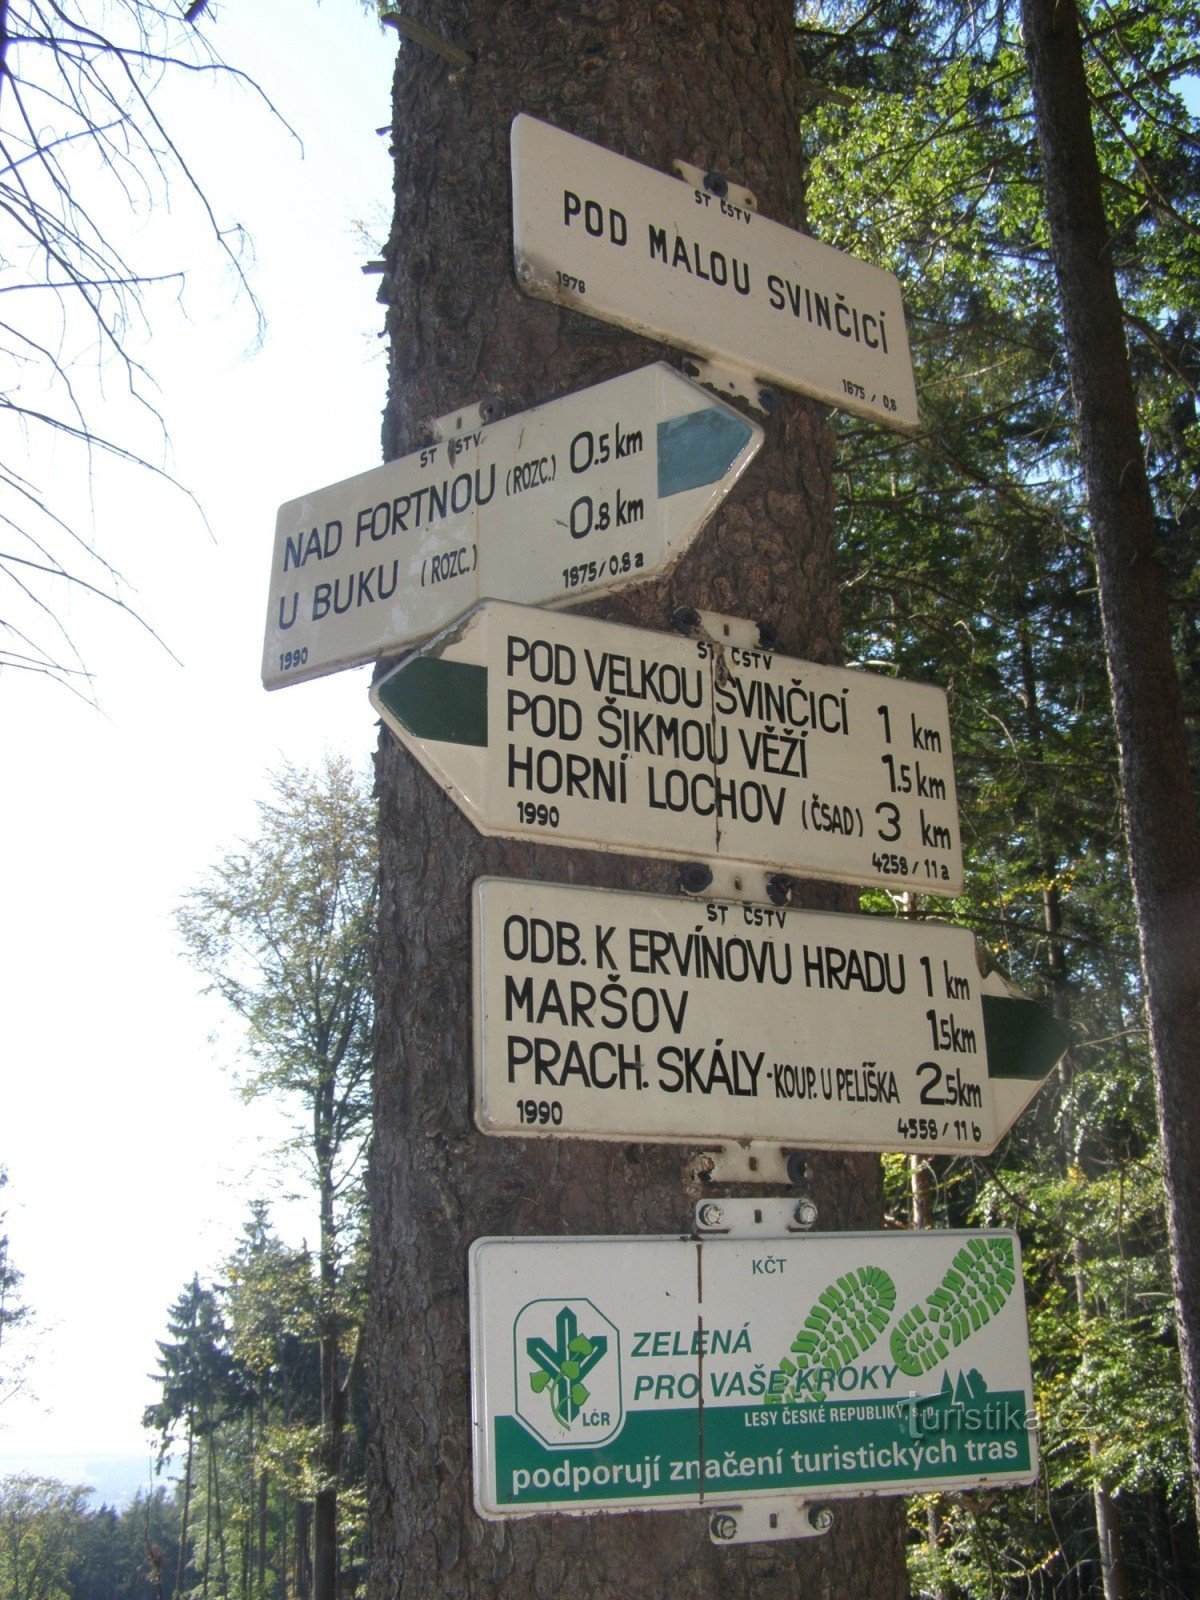 Prachovské skály - tourist crossroads Under Malou Svinčicí